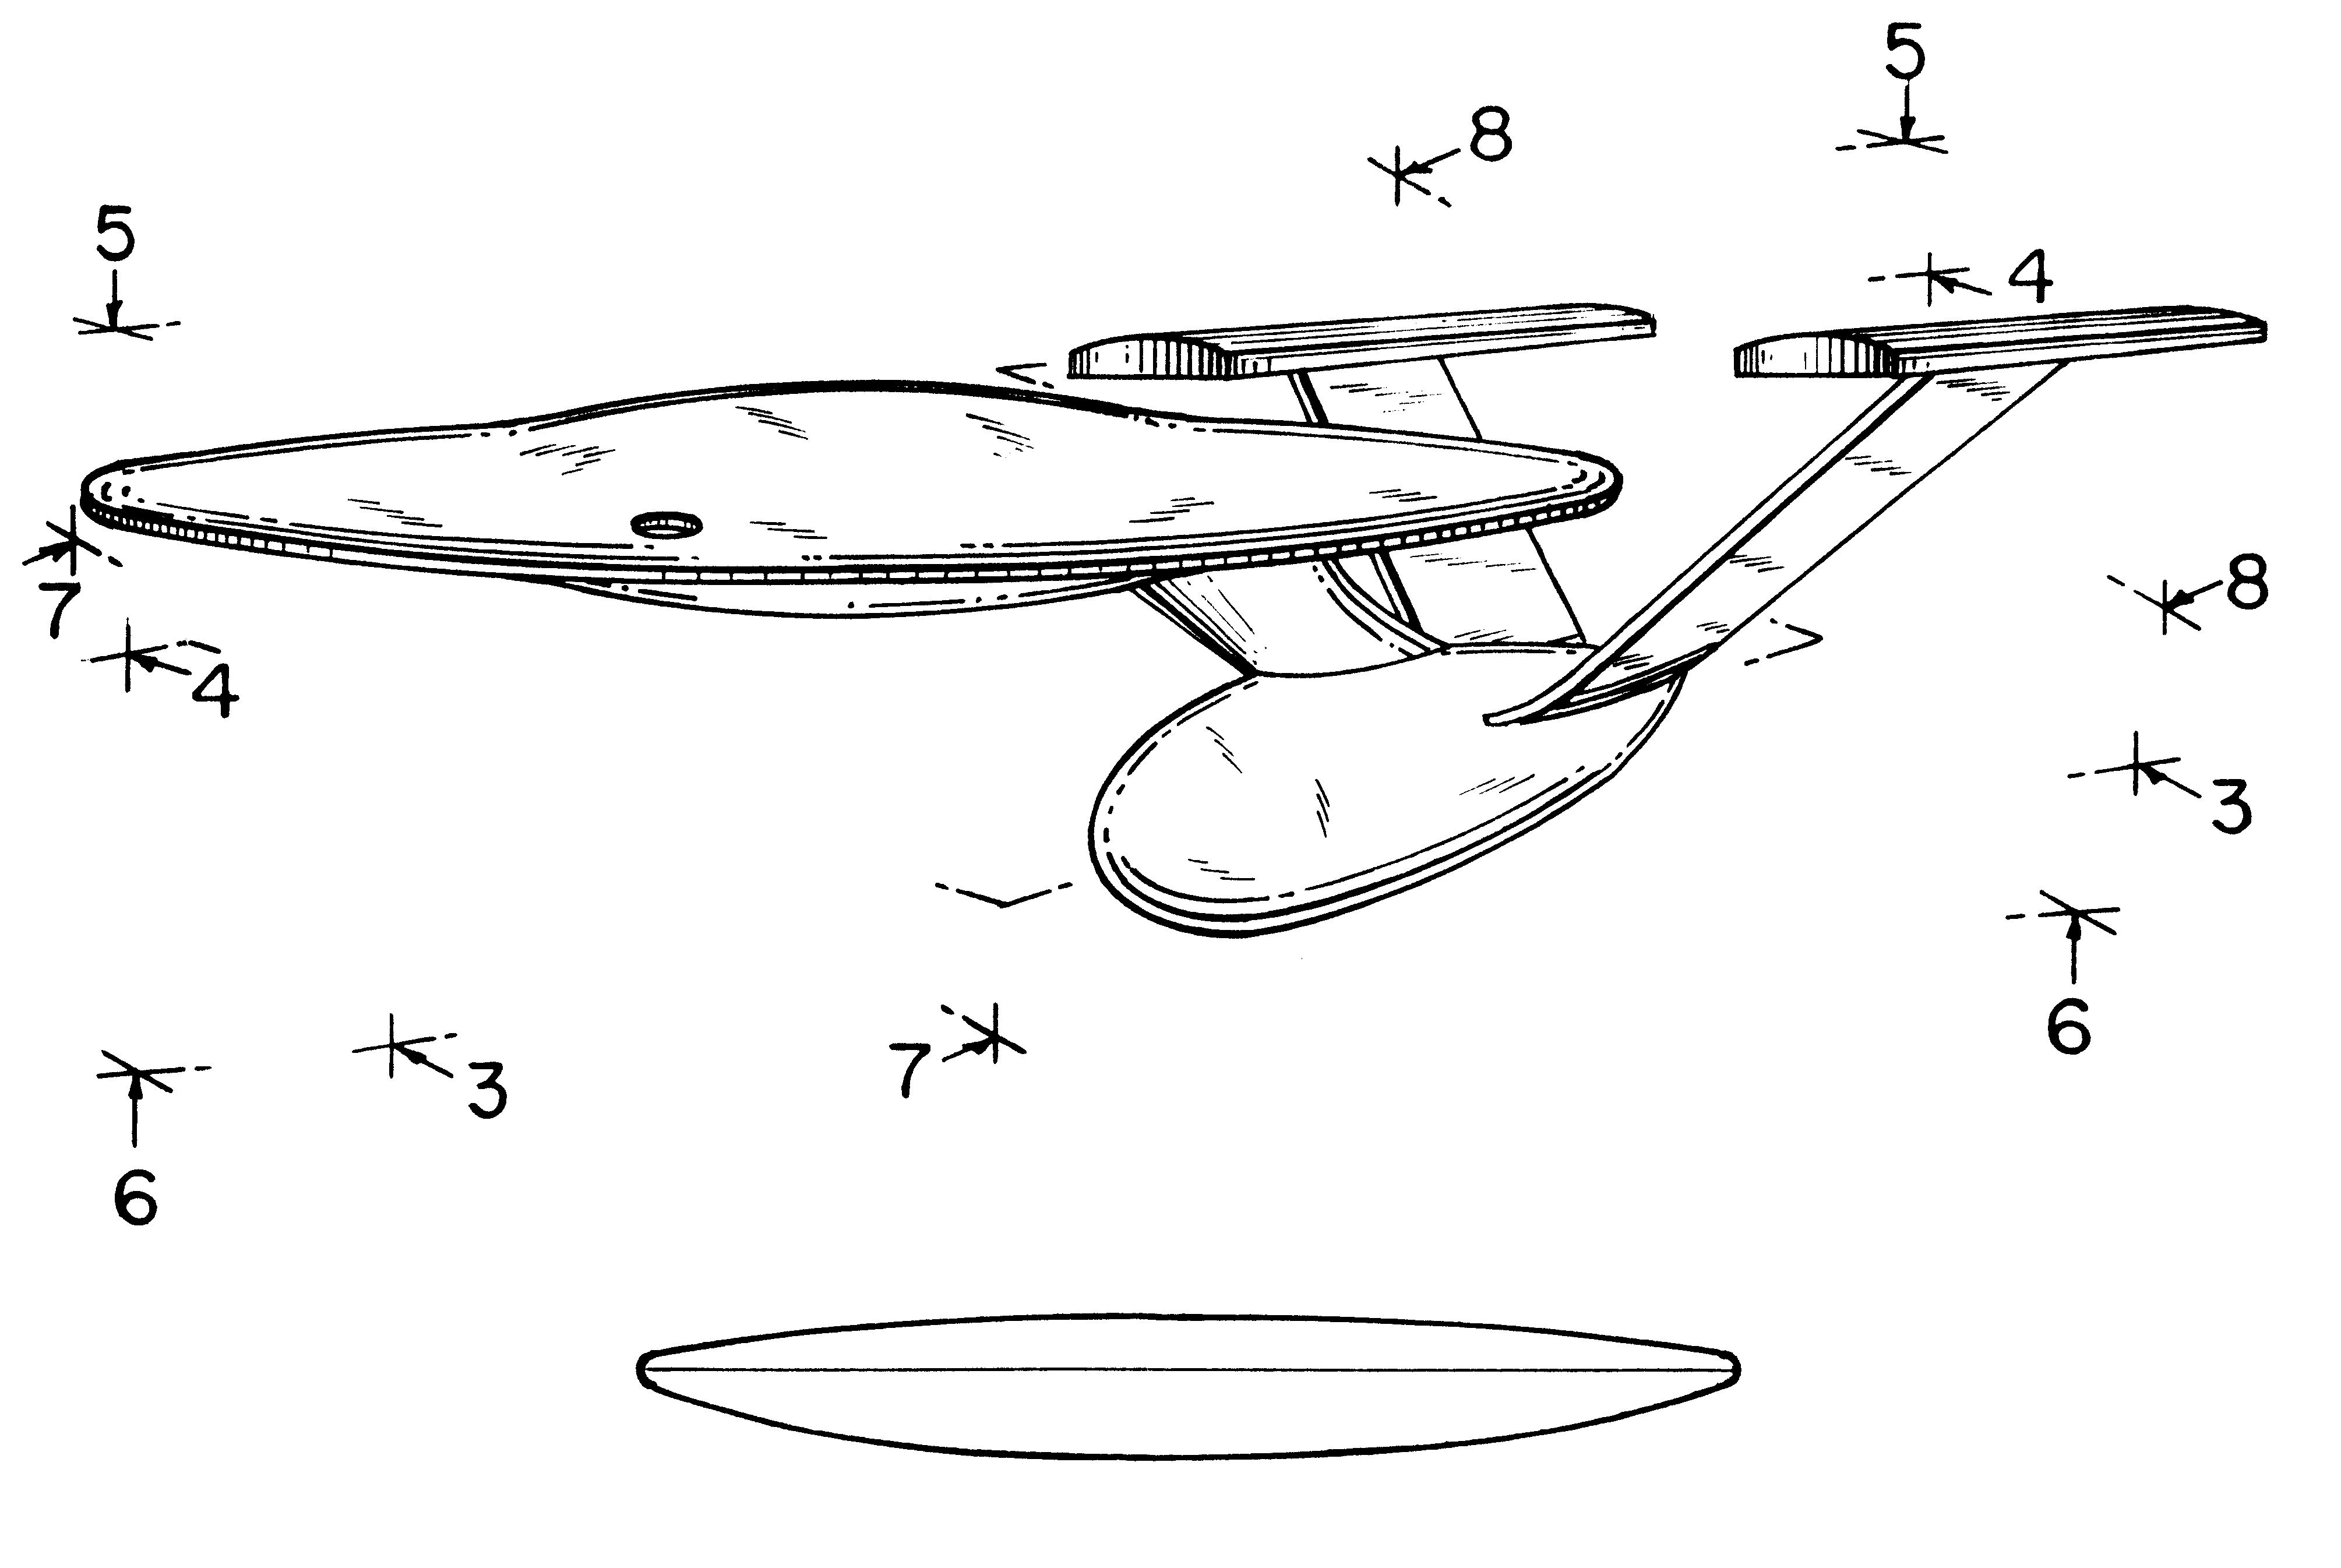 Model space craft glider